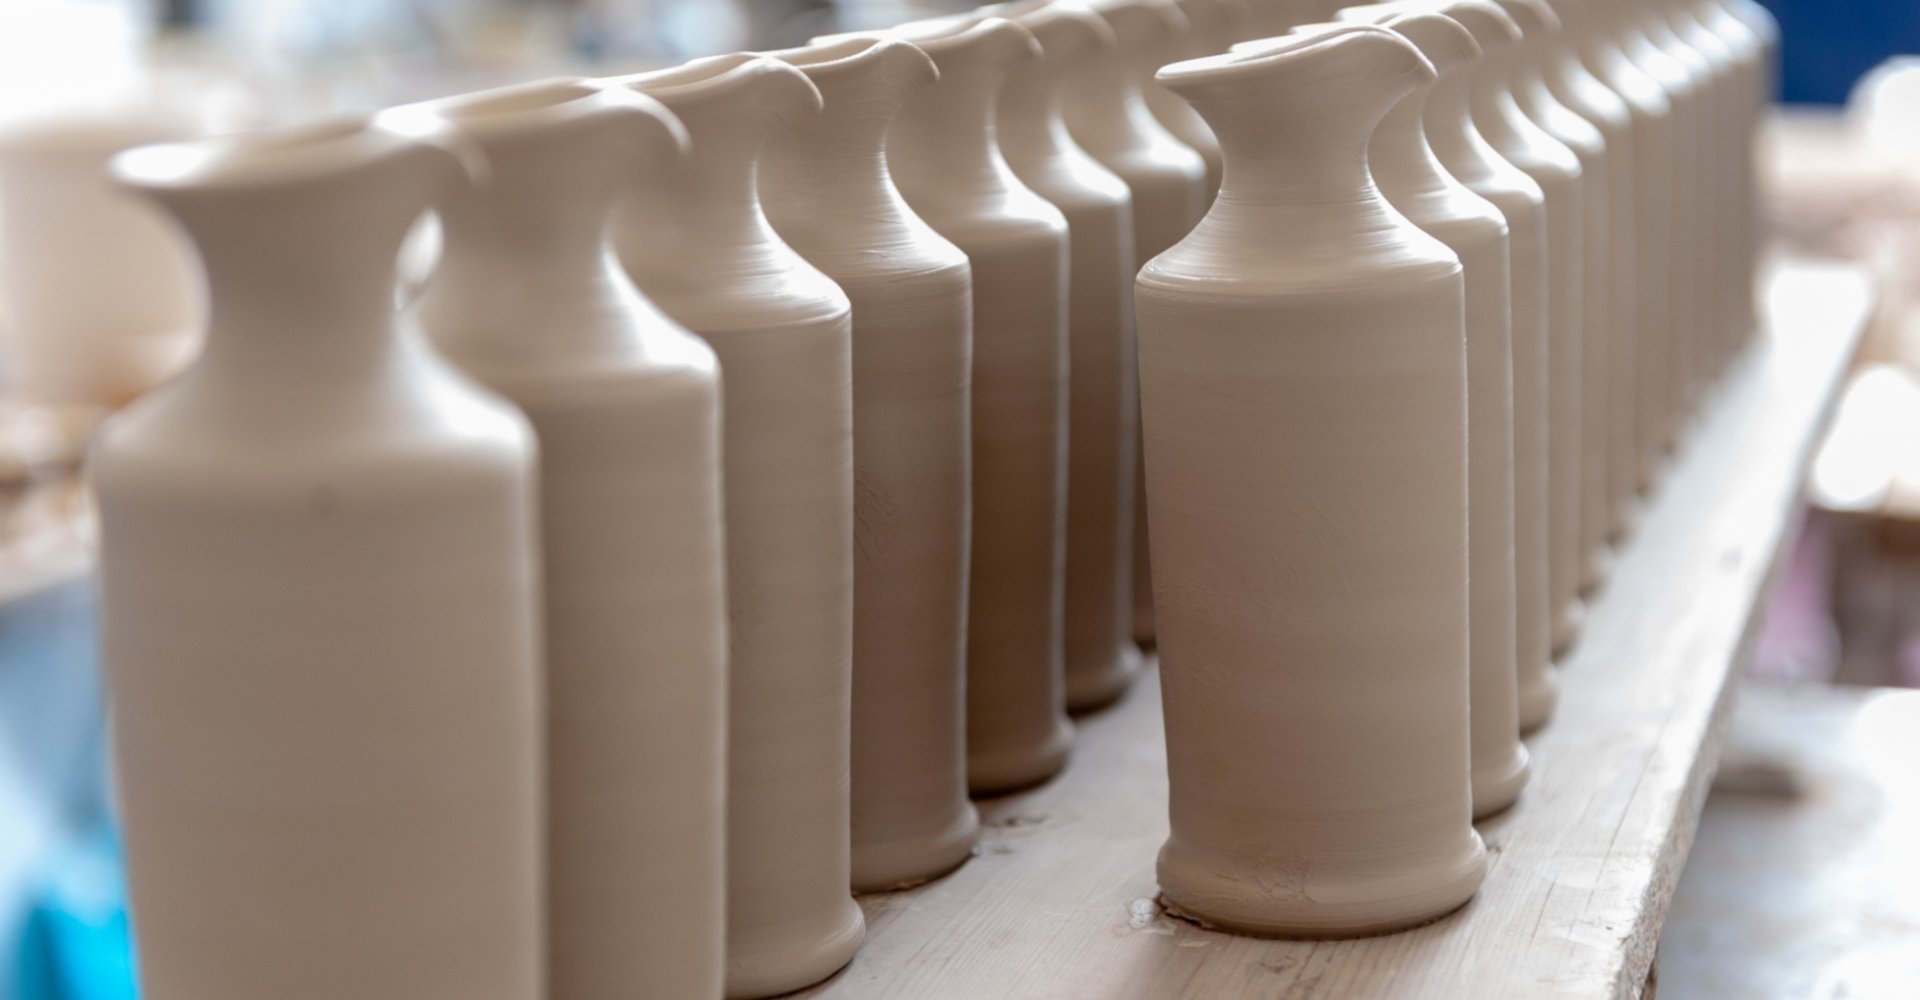 Montelupo Fiorentino, ceramic workshop